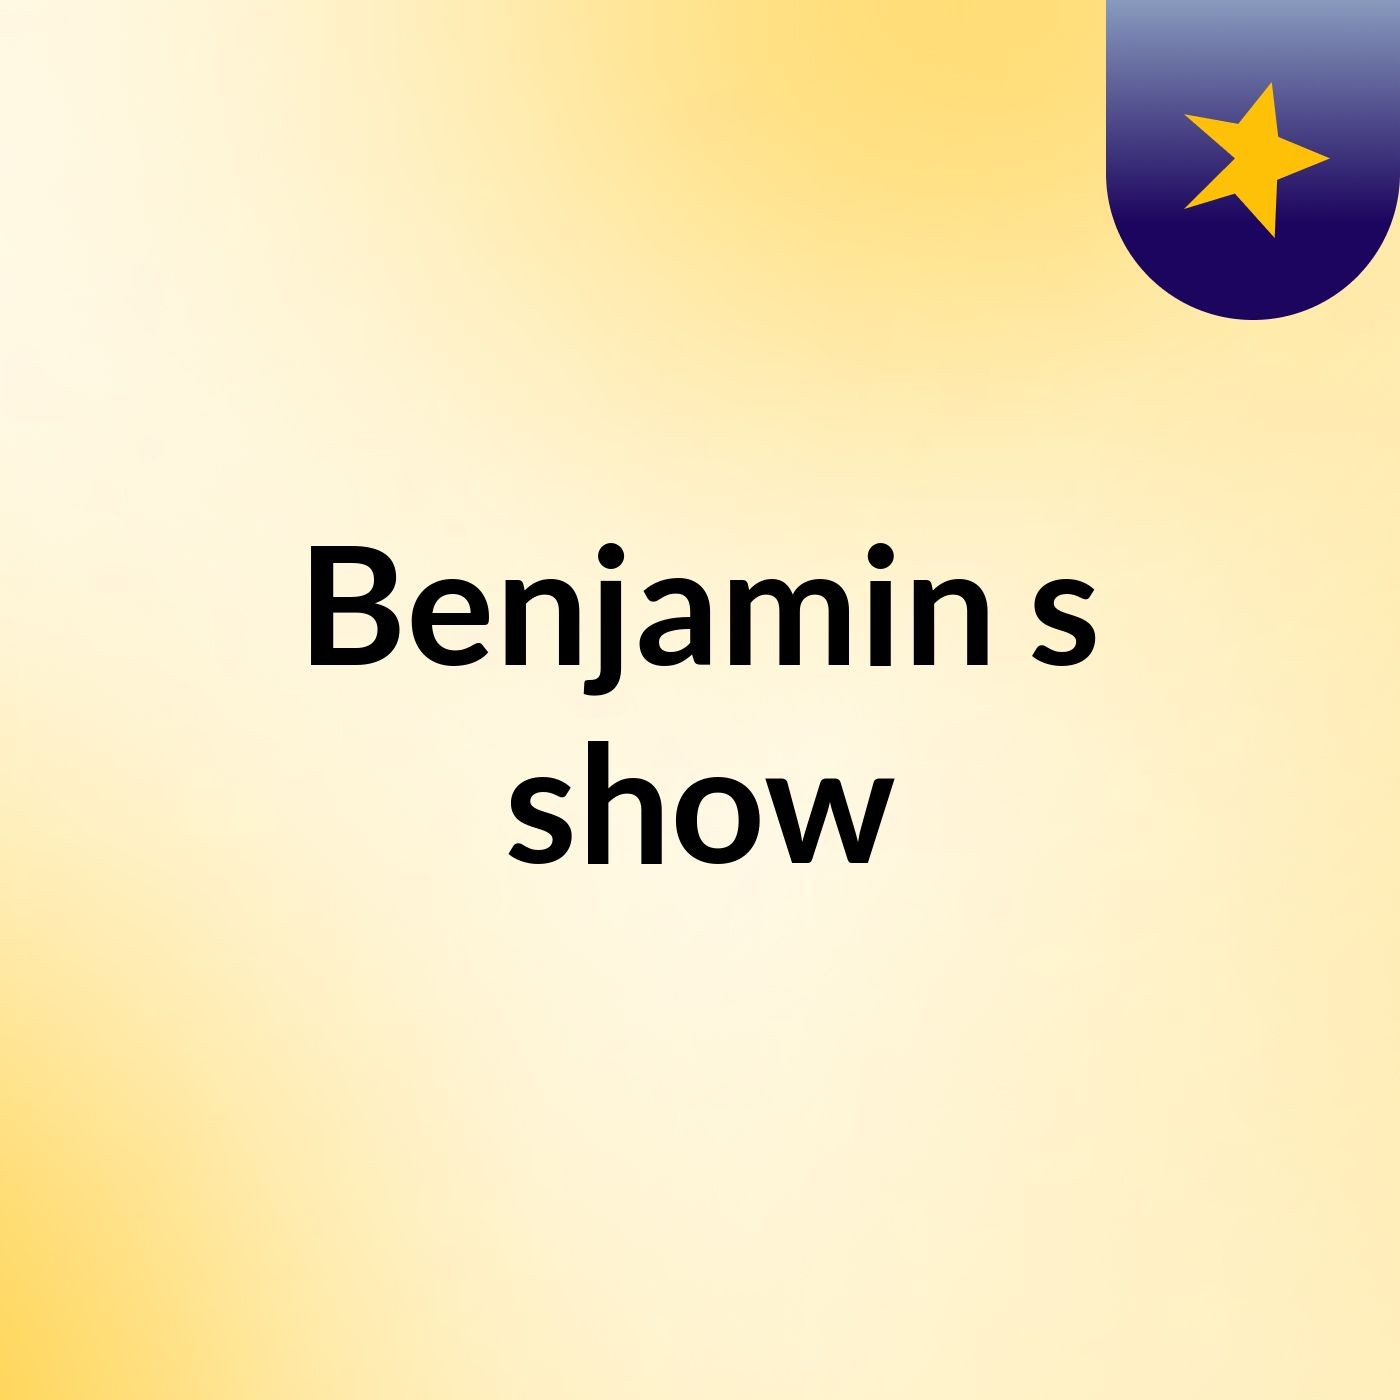 Benjamin's show